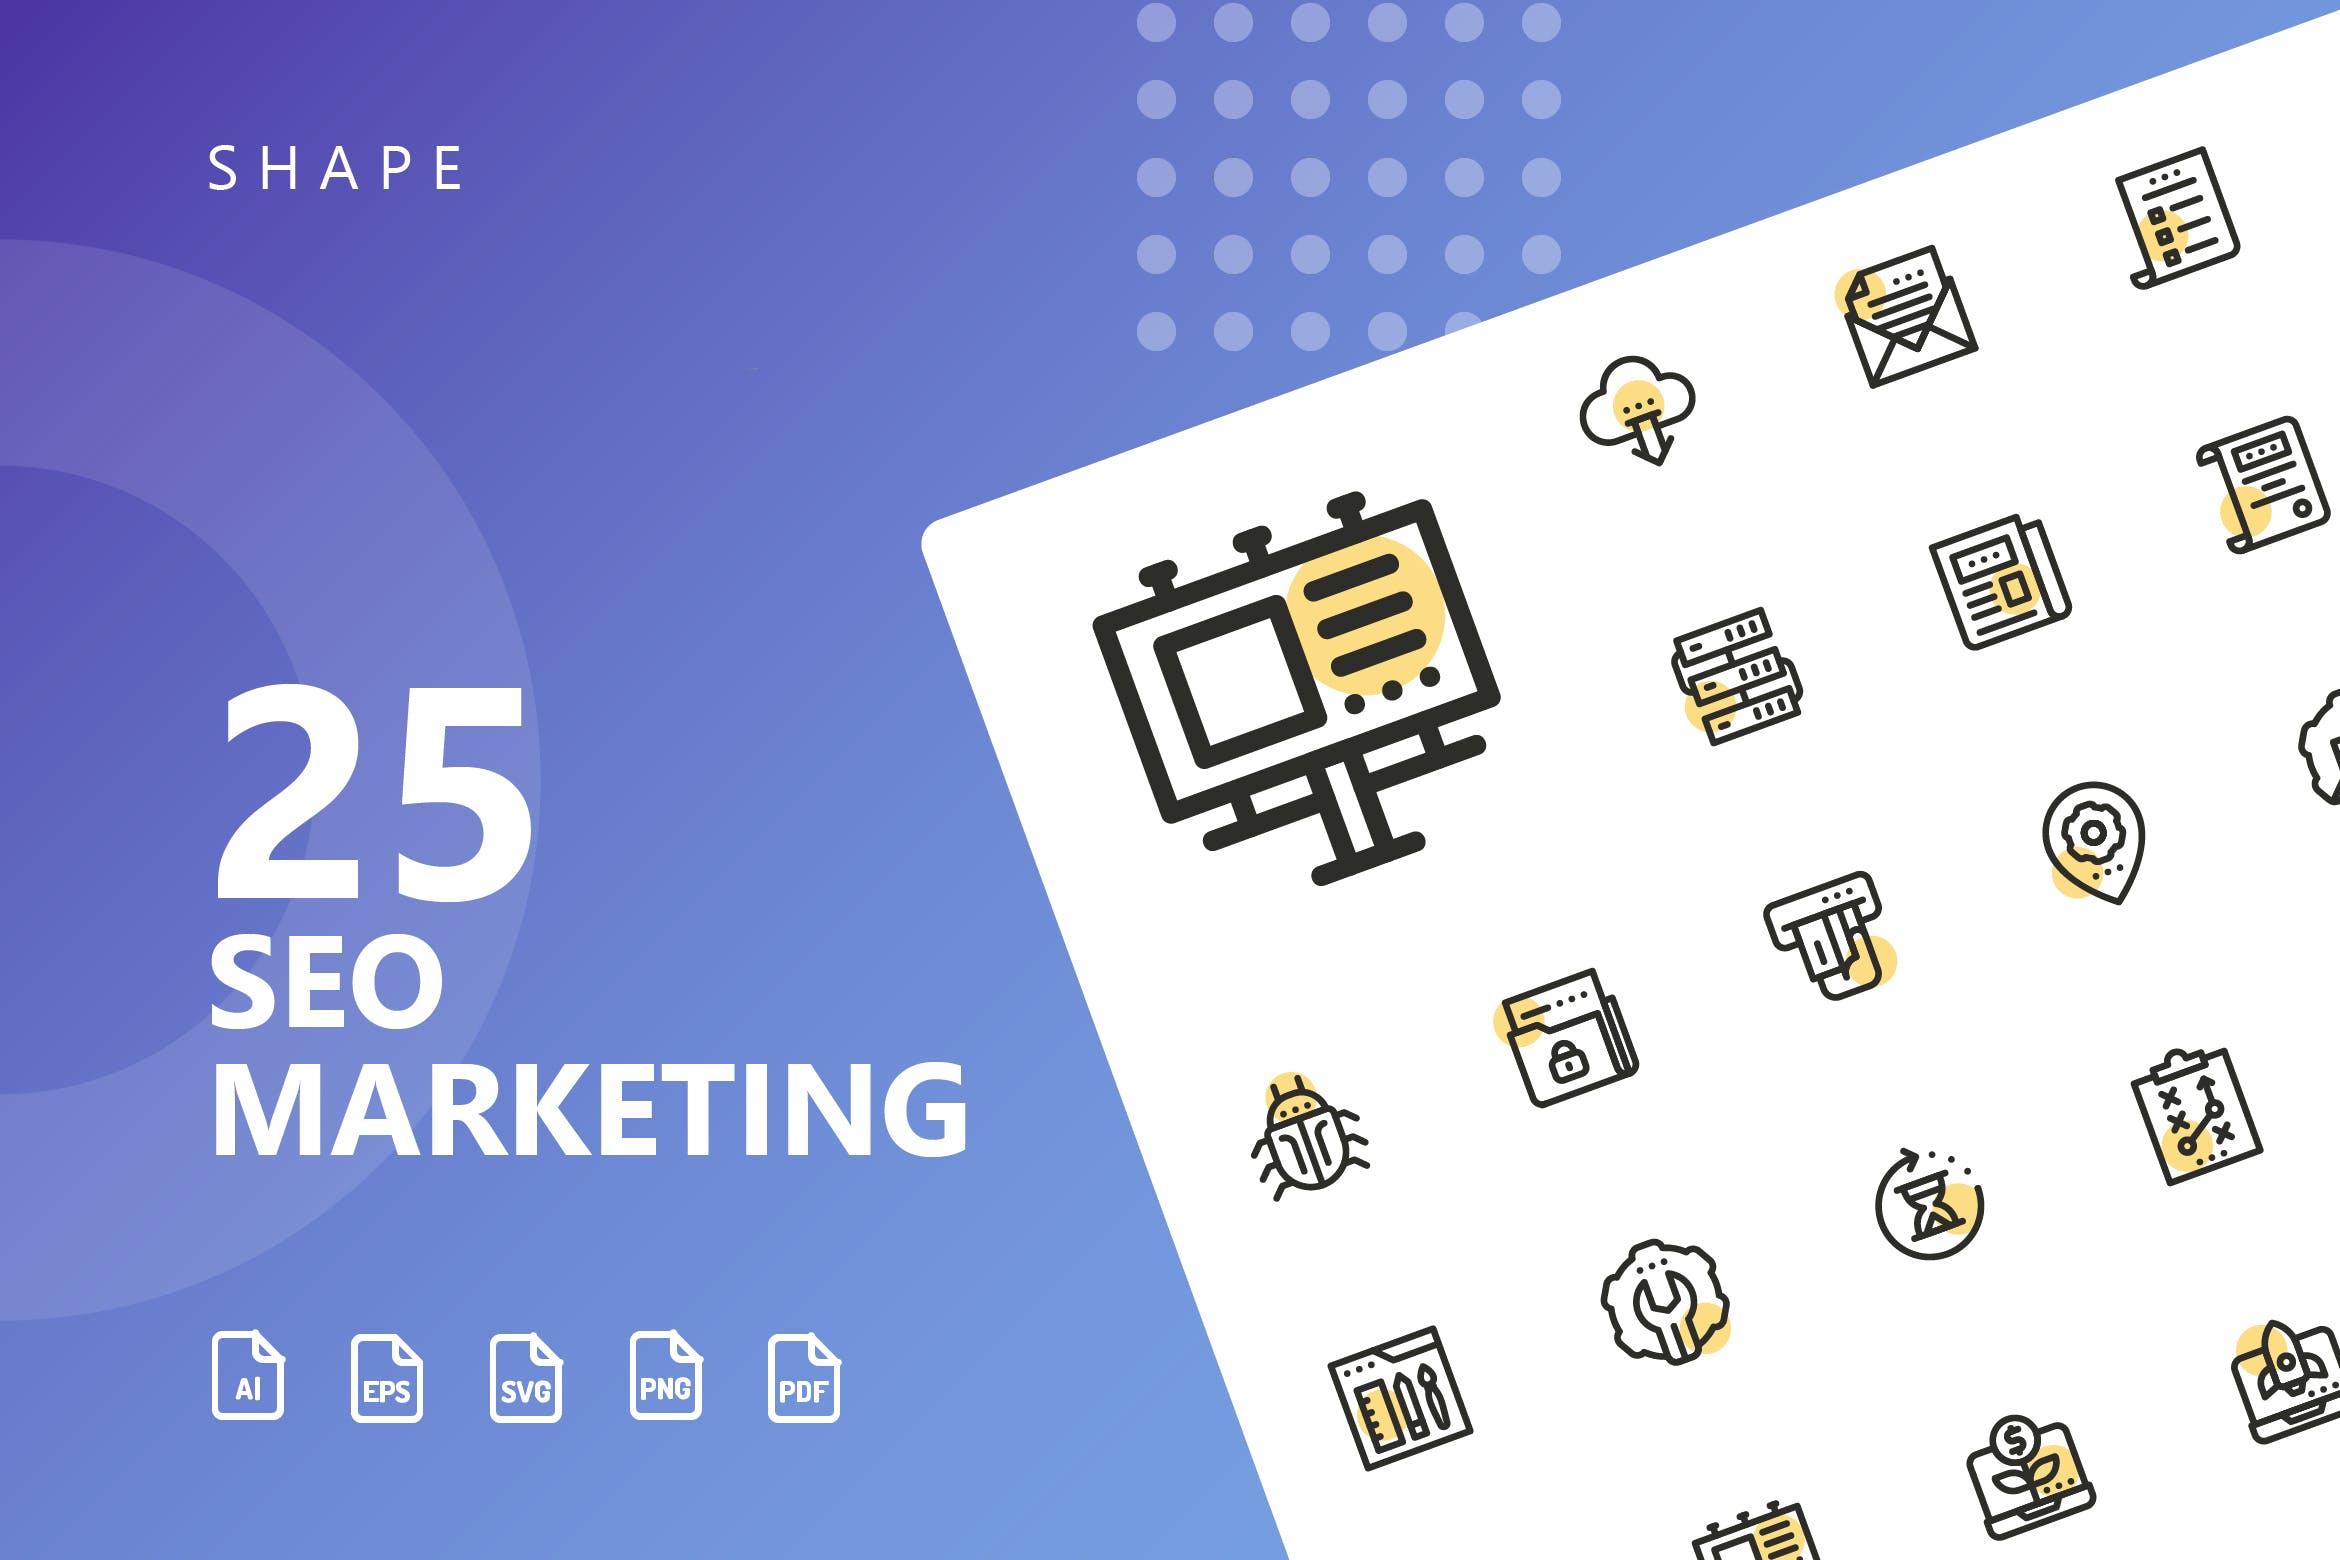 25枚SEO搜索引擎优化营销矢量圆点装饰素材库精选图标v1 SEO Marketing Shape Icons插图